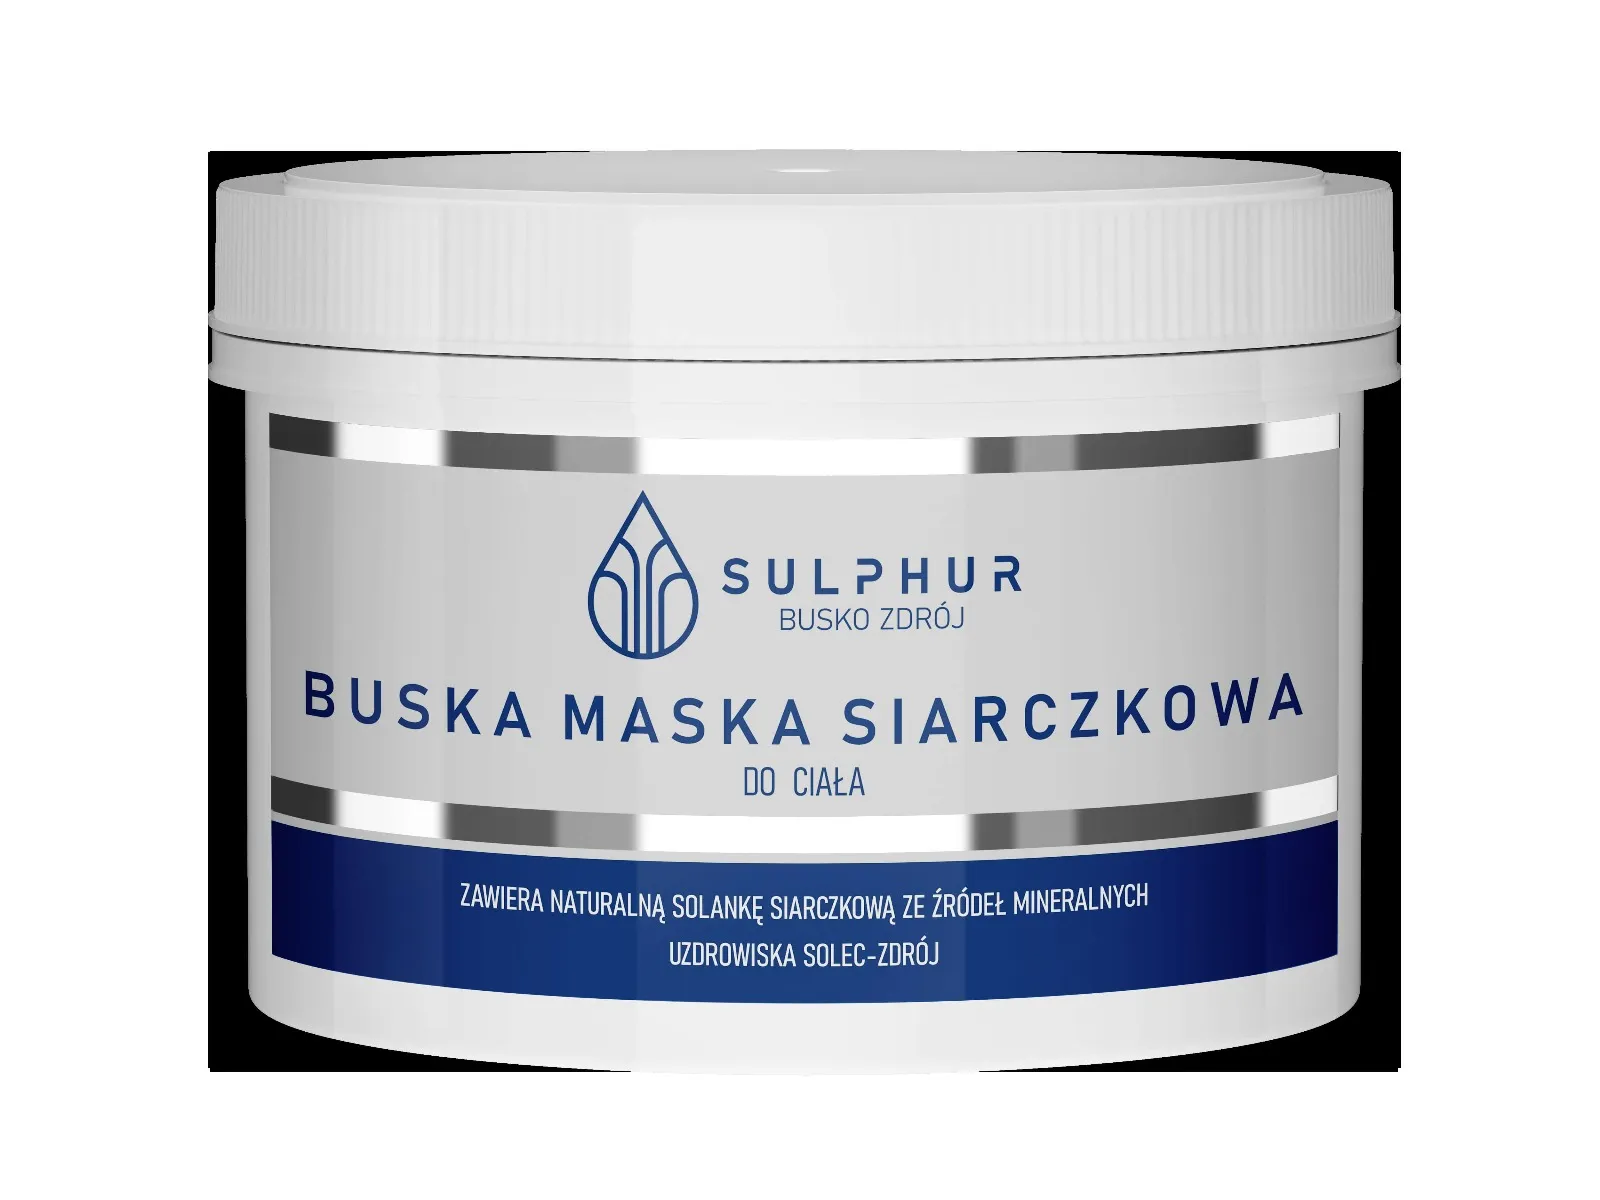 Sulphur, buska maska siarczkowa do ciała, 500 g